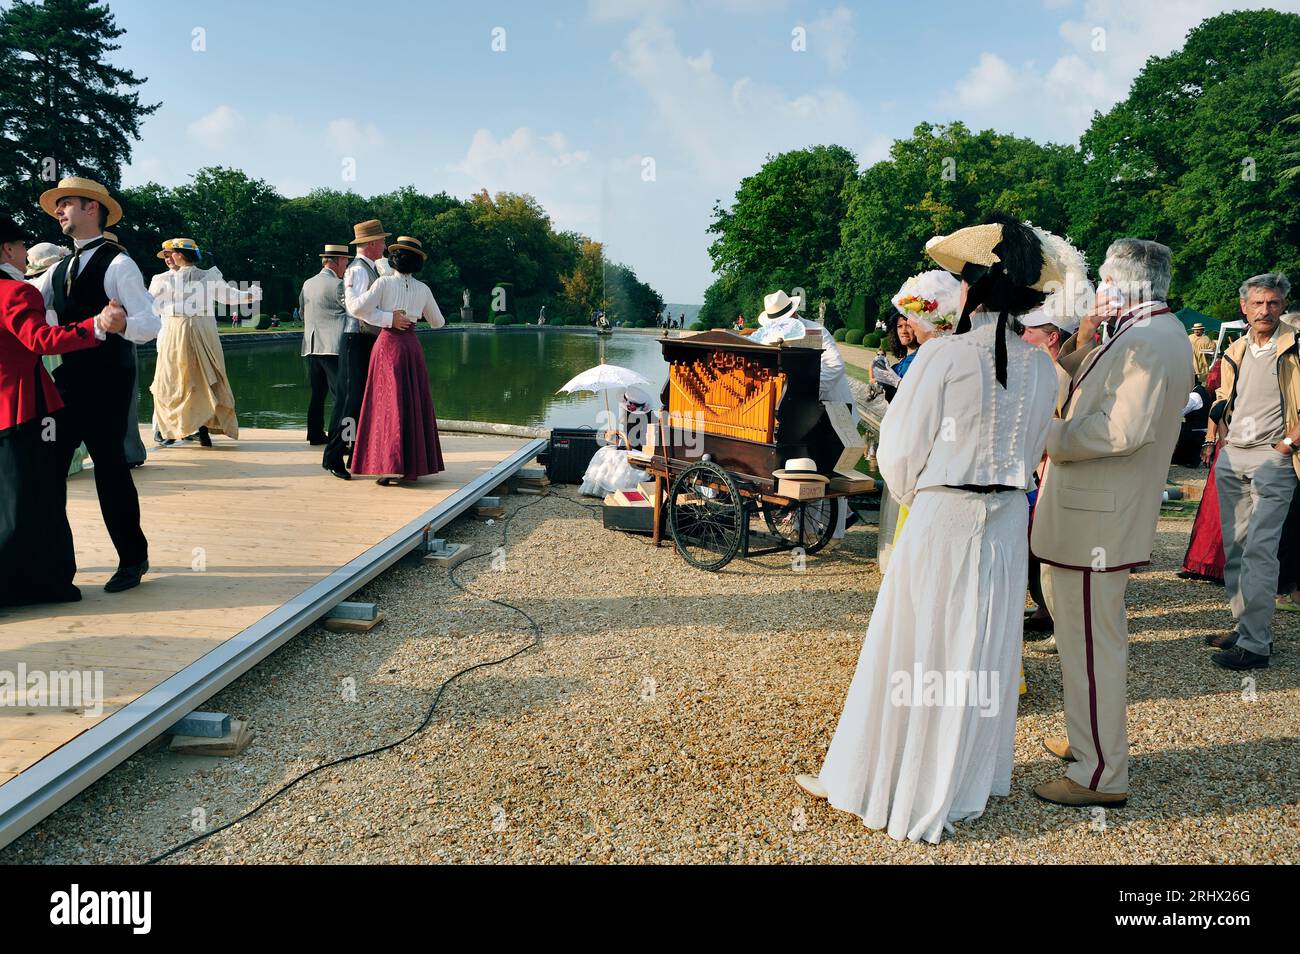 Choisiel, Francia - Chateau de Breteuil, persone vestite in costume d'epoca, abiti fantasiosi, coppie anziane, ballo al ballo, Journees du Patrimoine Foto Stock